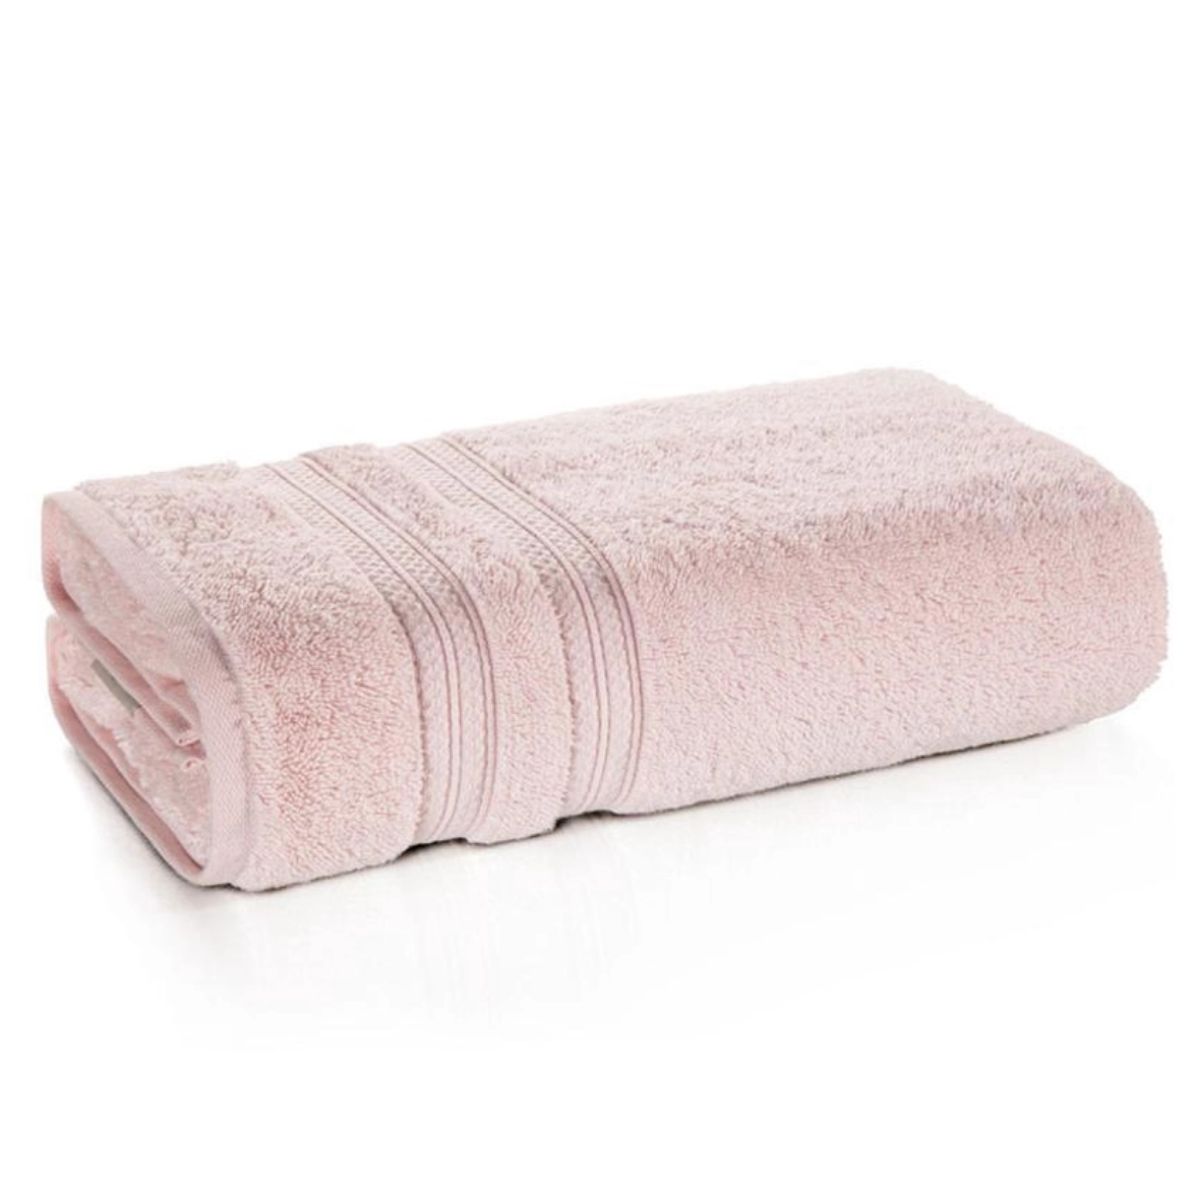 toalha-rosto-karsten-unika-marshmallow-1.jpg